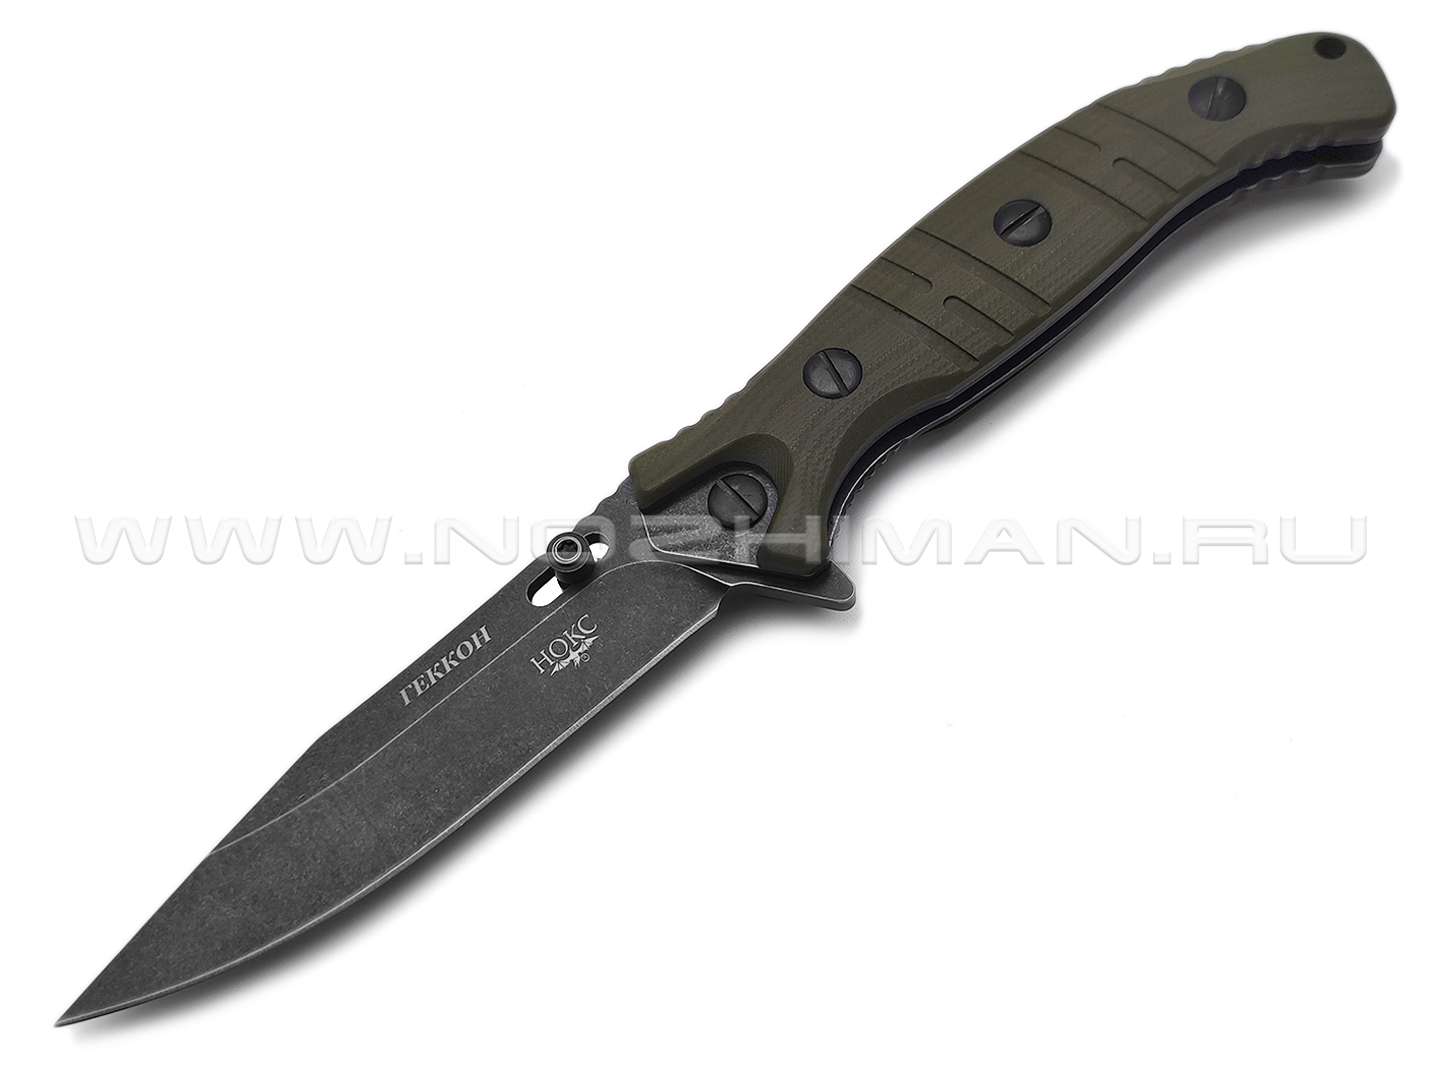 Нокс складной нож Геккон 340-580406 сталь Aus-8 blackwash, рукоять G10 olive green